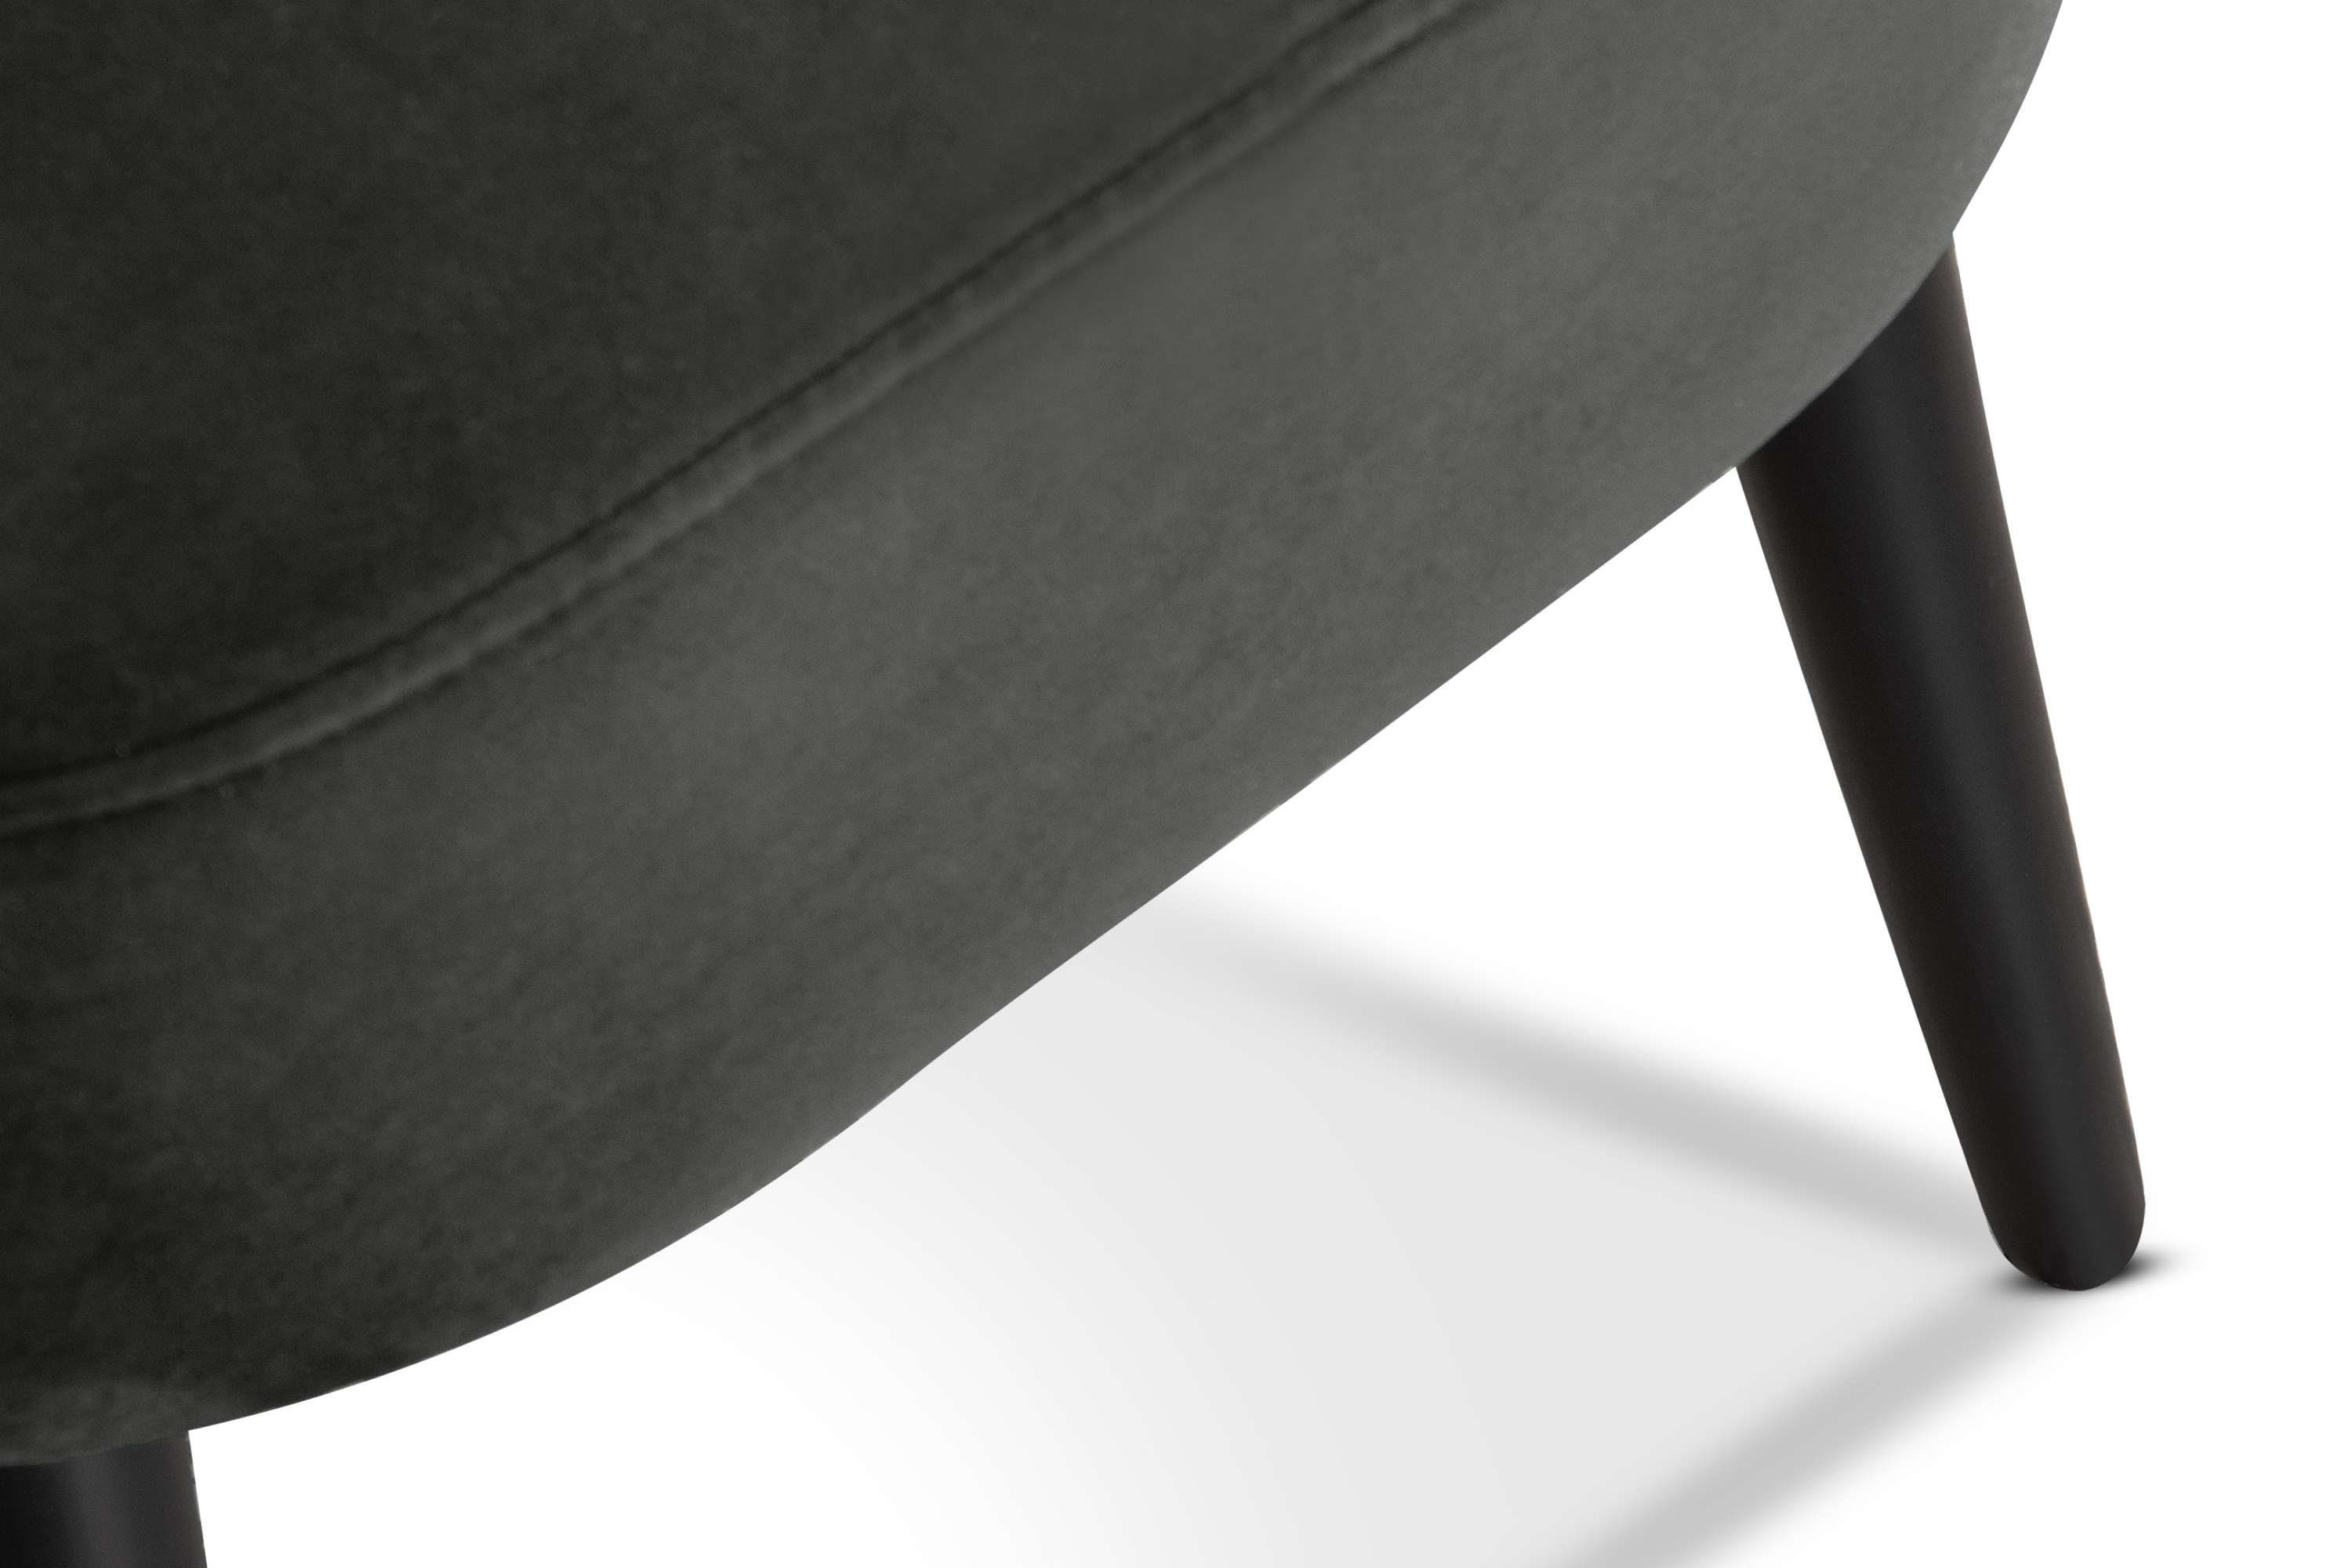 schwarz der Buchenholz Ziernaht graphit/schwarz Cocktailsessel an DUCO Beinen aus Konsimo lackierten graphit Sessel, Rückenlehne, |